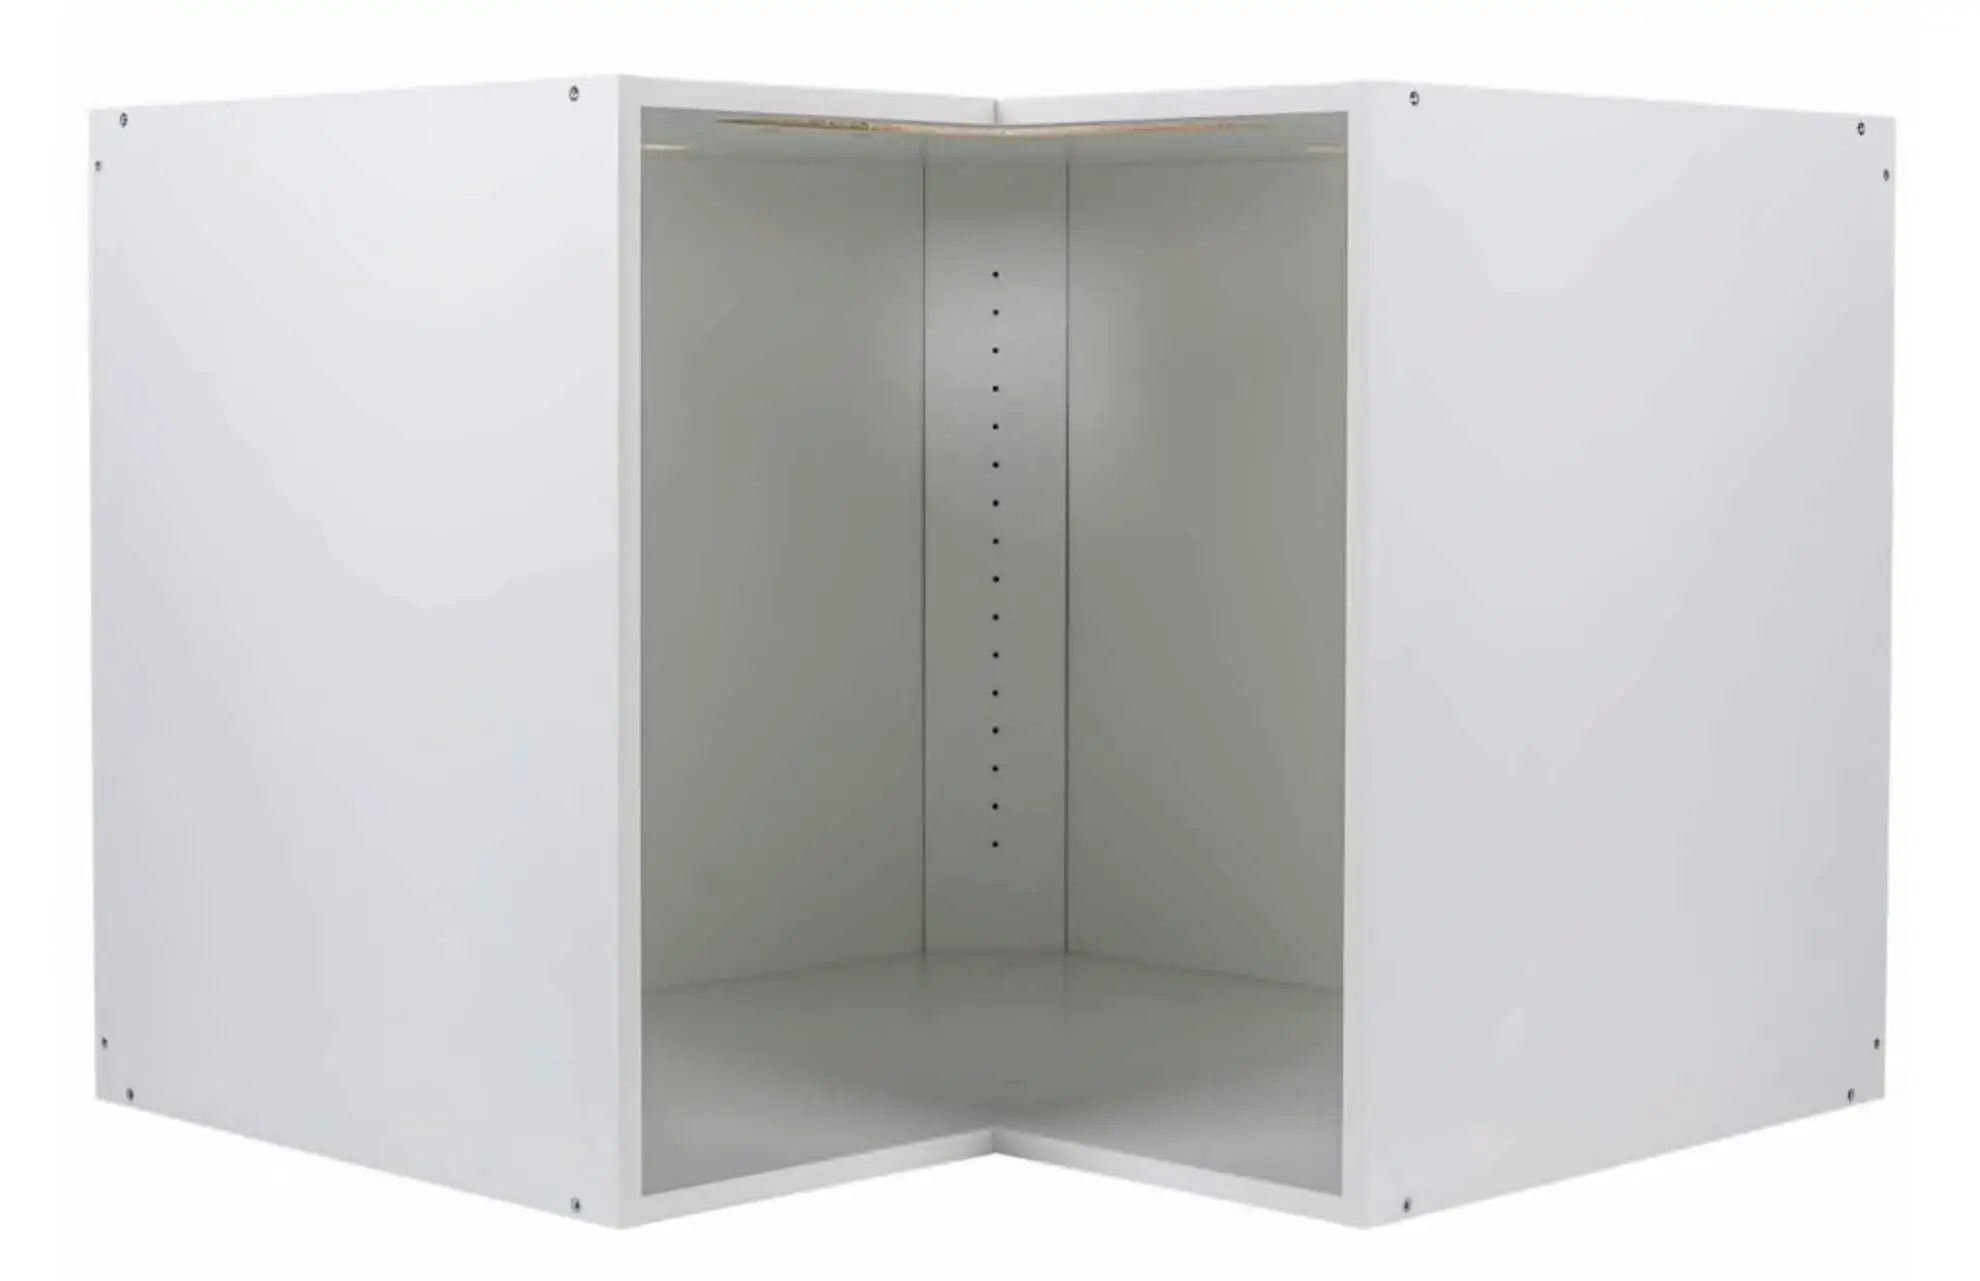 A Base Corner Cabinet for IKEA Faktum kitchens